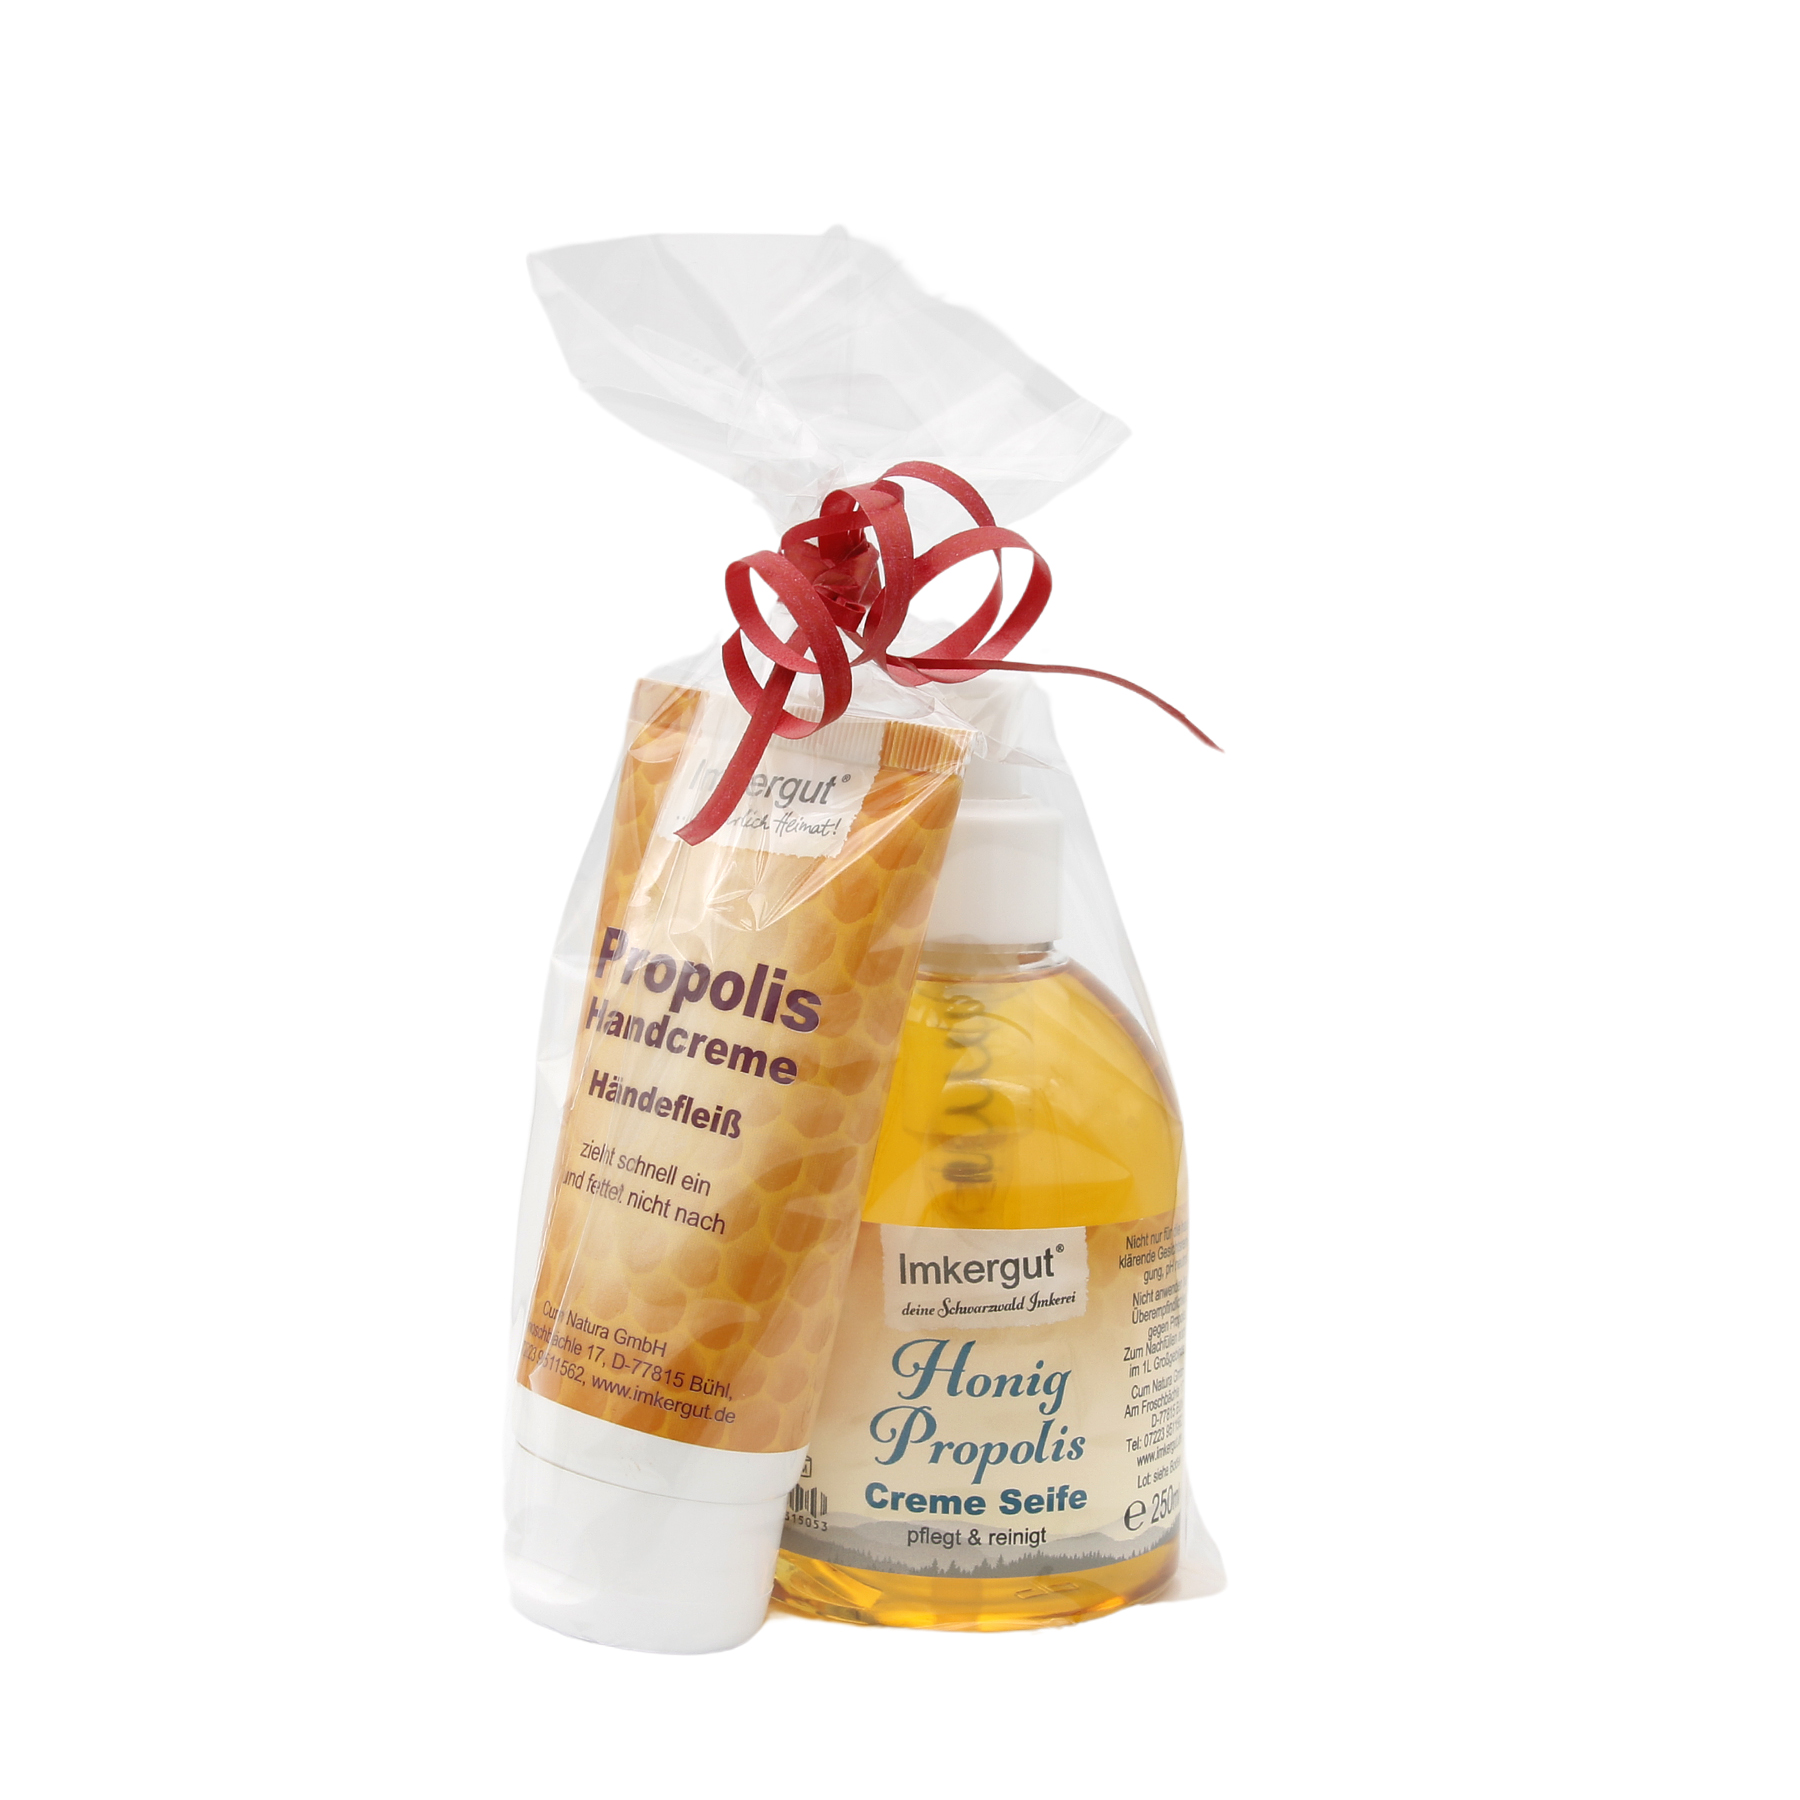 Propolis Handcreme mit Honig Propolis Creme Seife als Geschenk verpackt